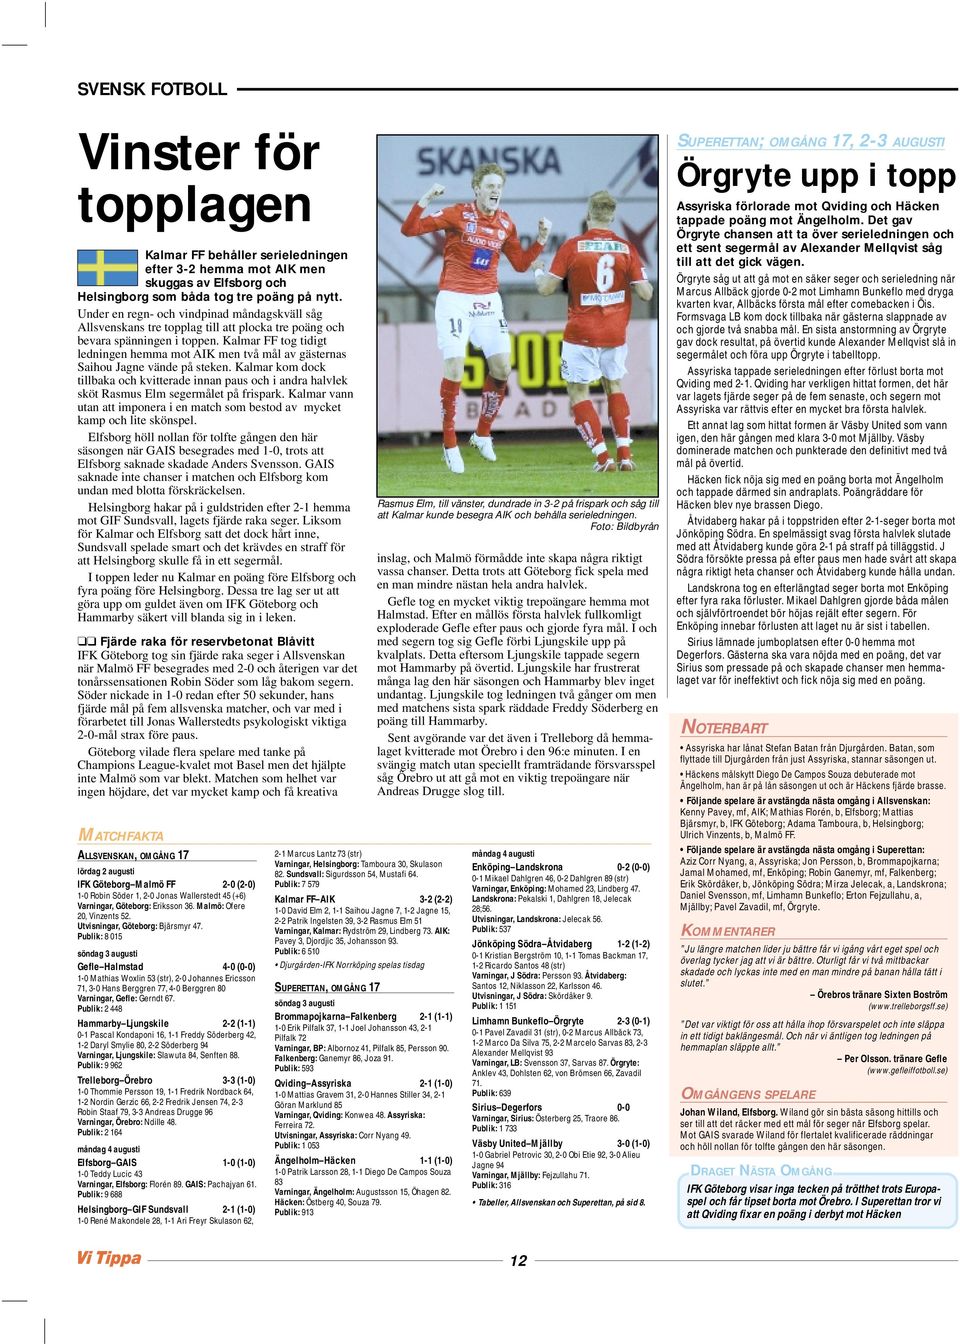 Kalmar FF tog tidigt ledningen hemma mot AIK men två mål av gästernas Saihou Jagne vände på steken.